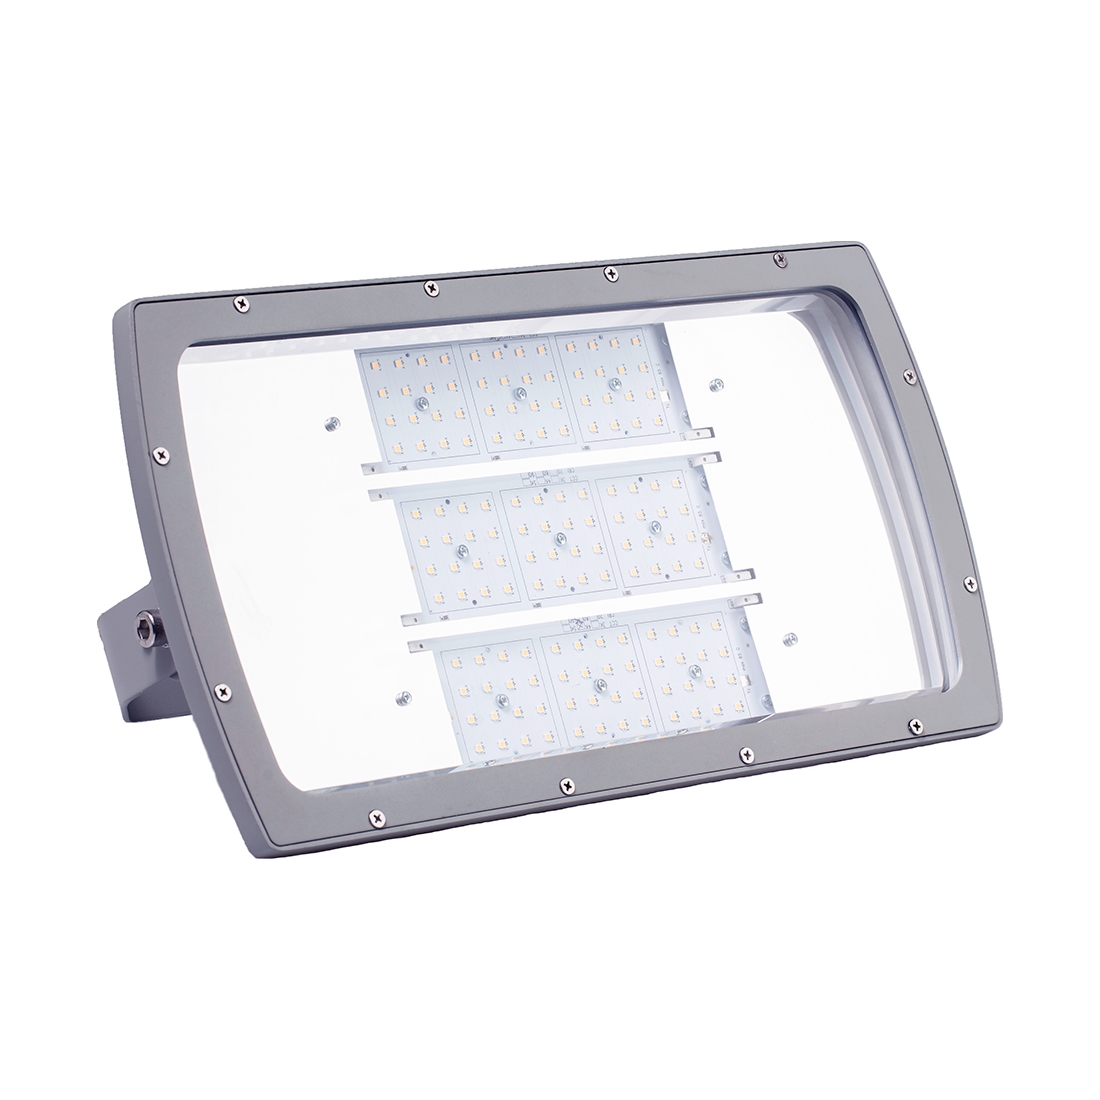 Corp de iluminat industrial ARIA-01 LED